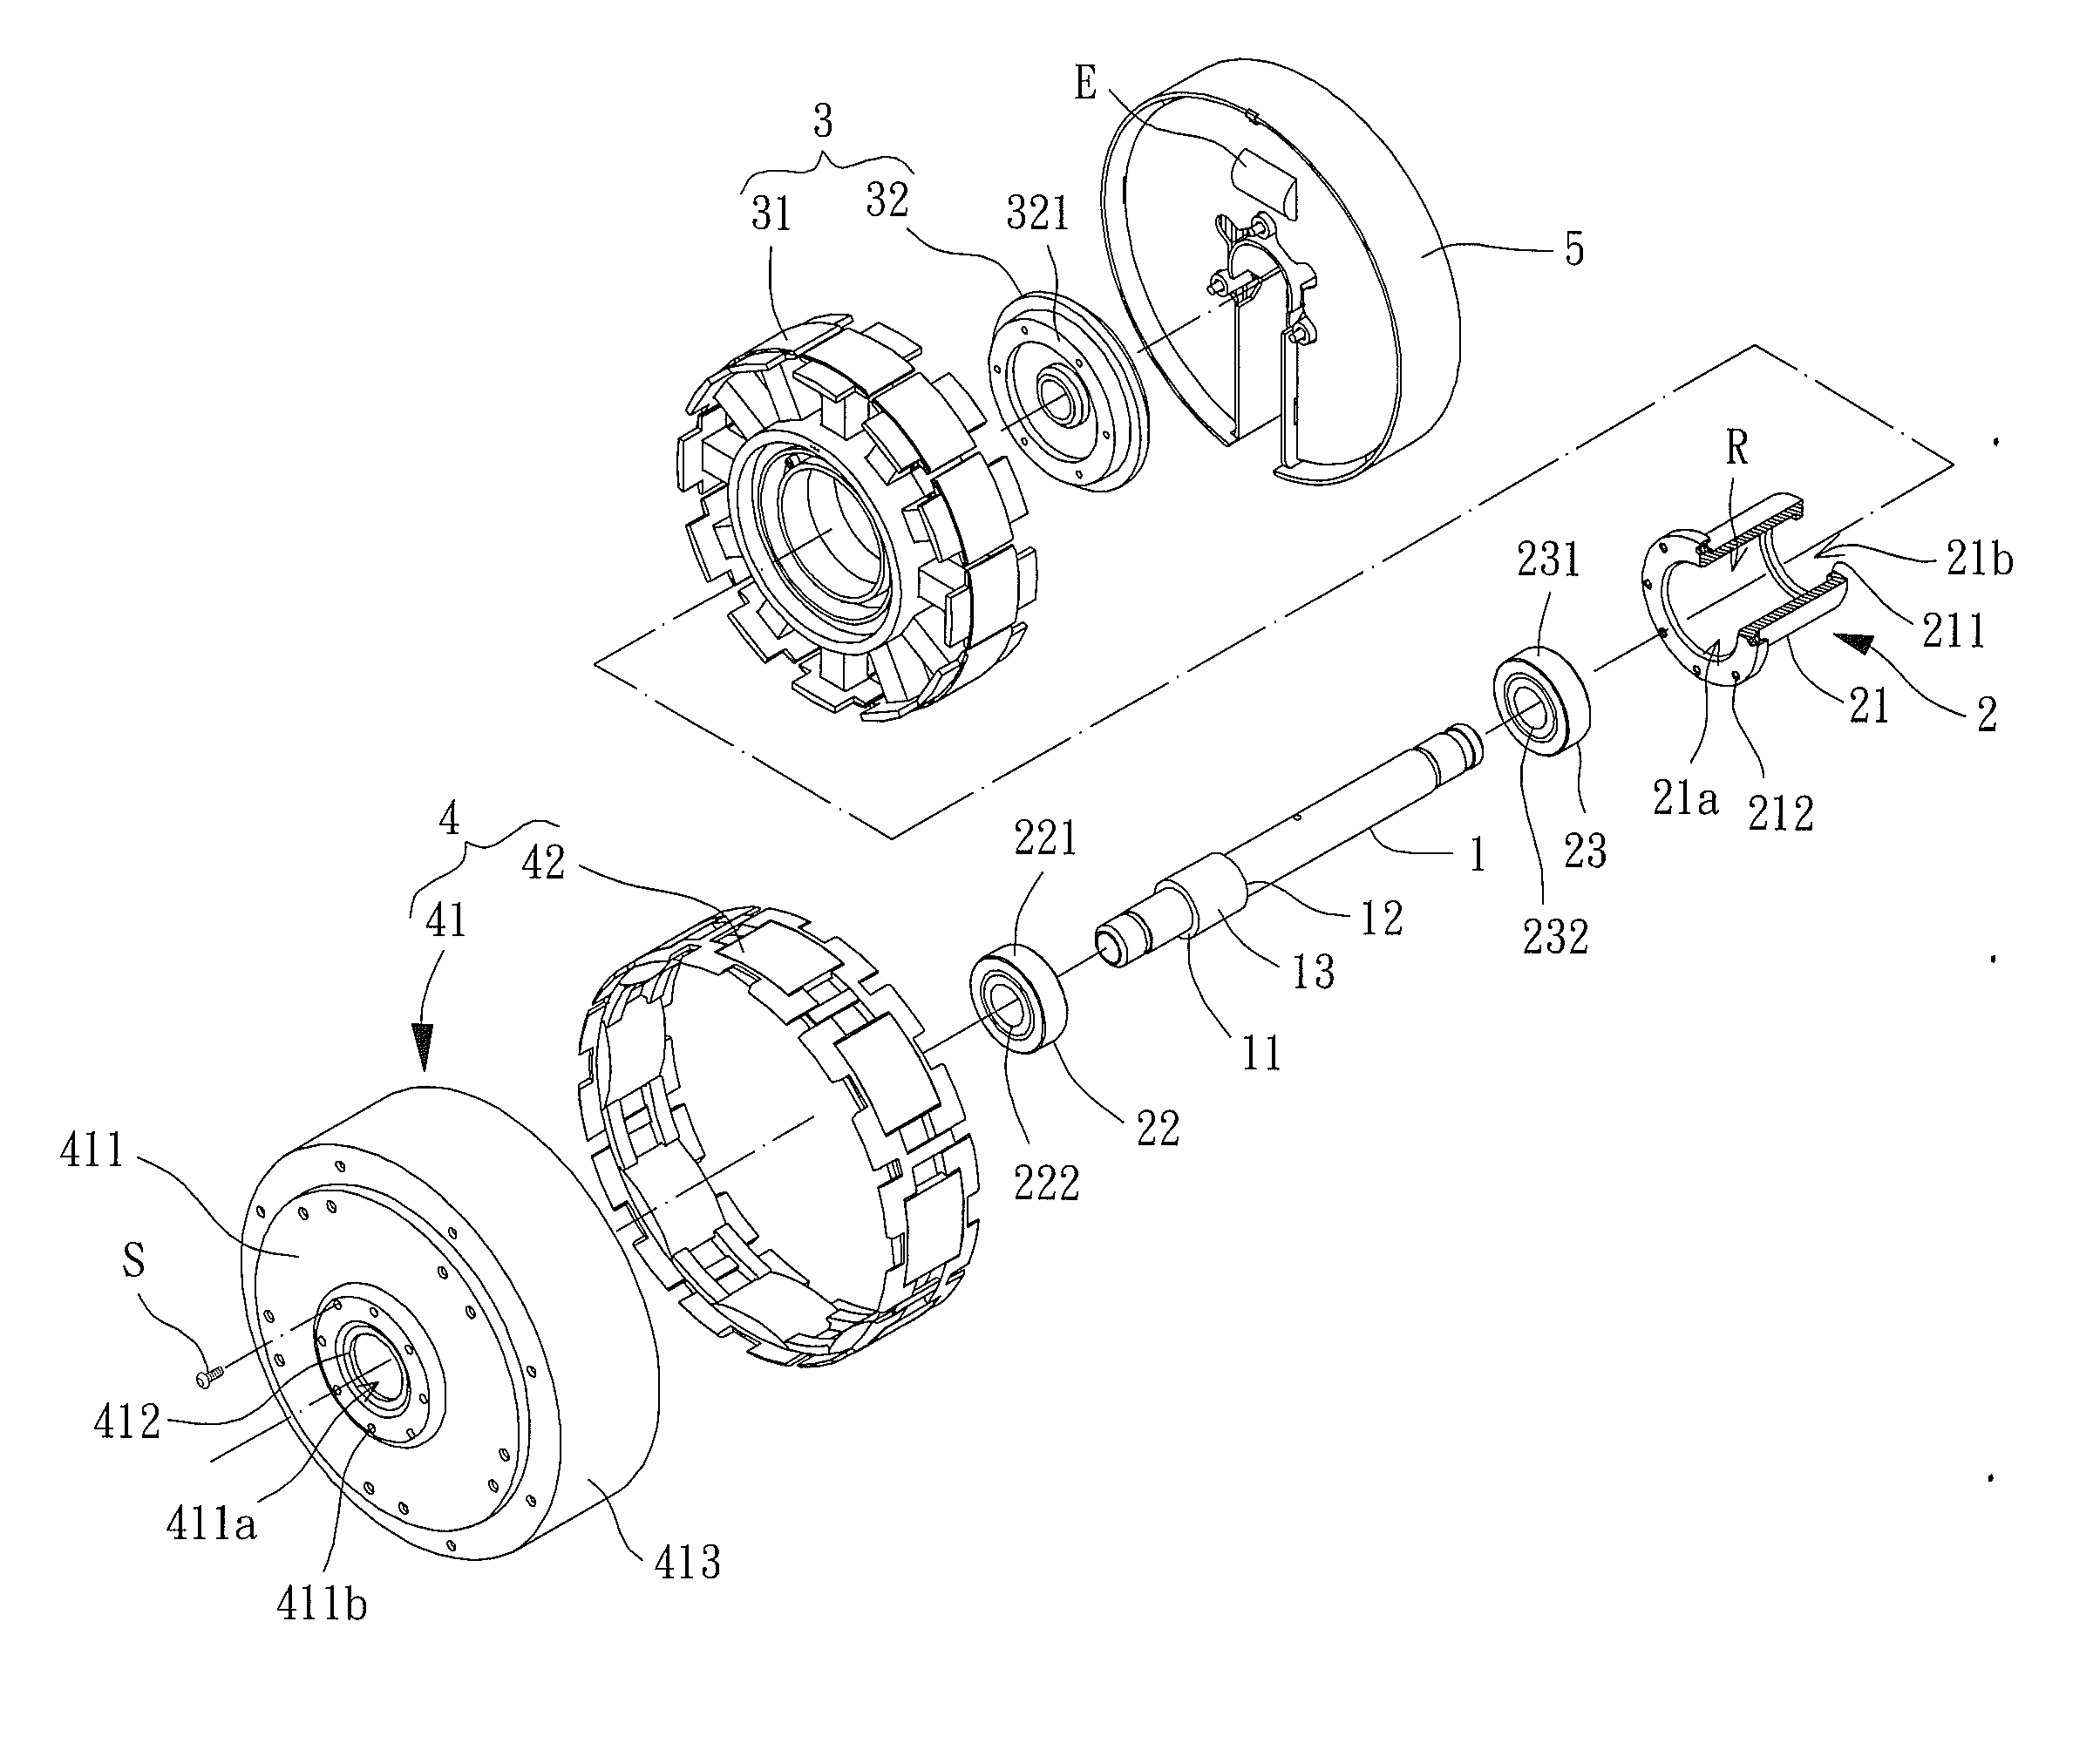 Motor of a Ceiling Fan